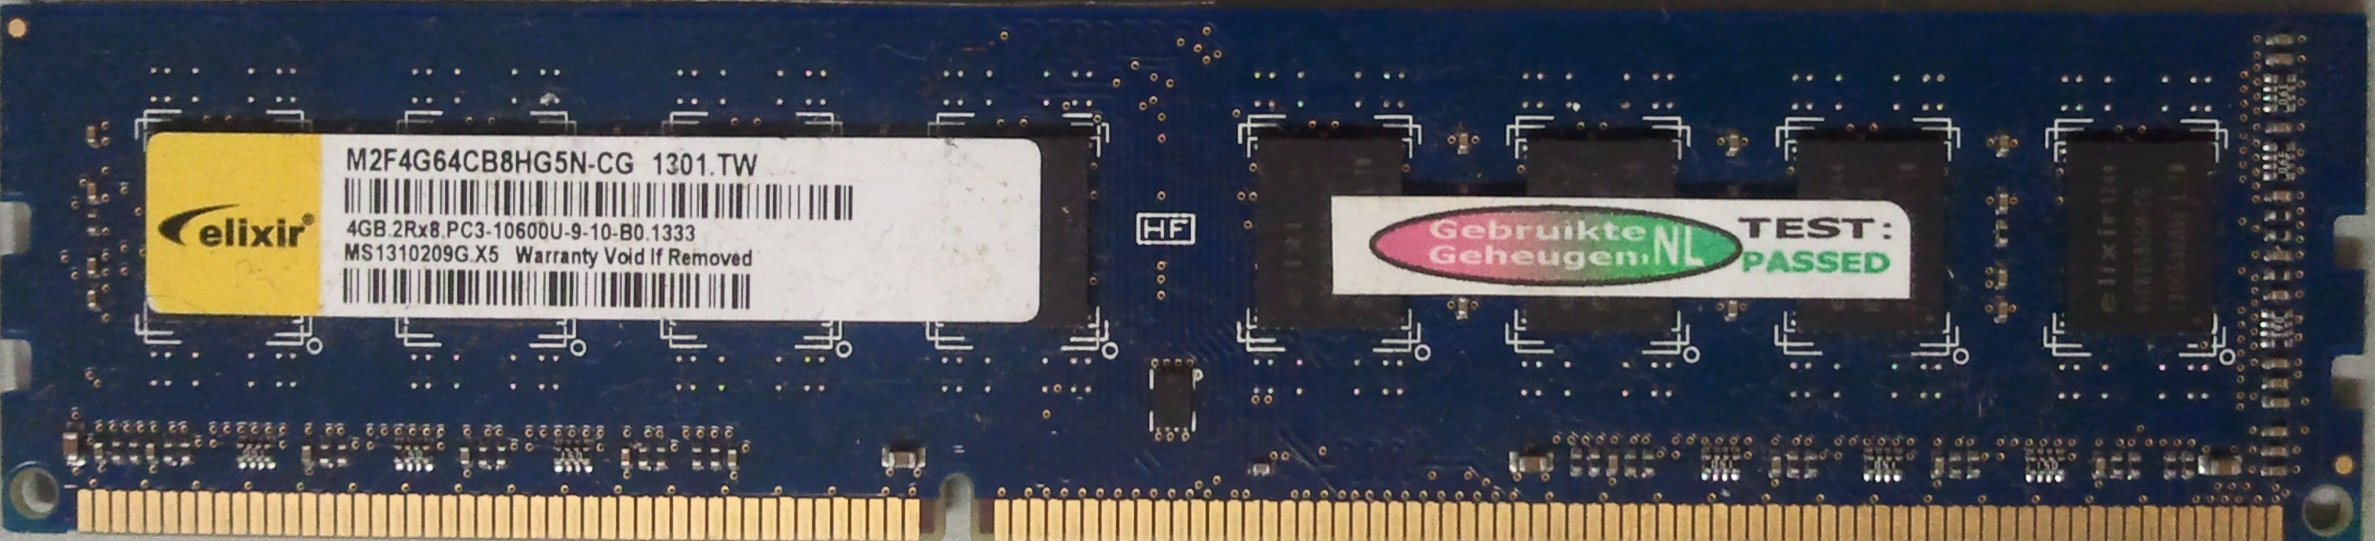 4GB 2RX8 PC3-10600U-9-10